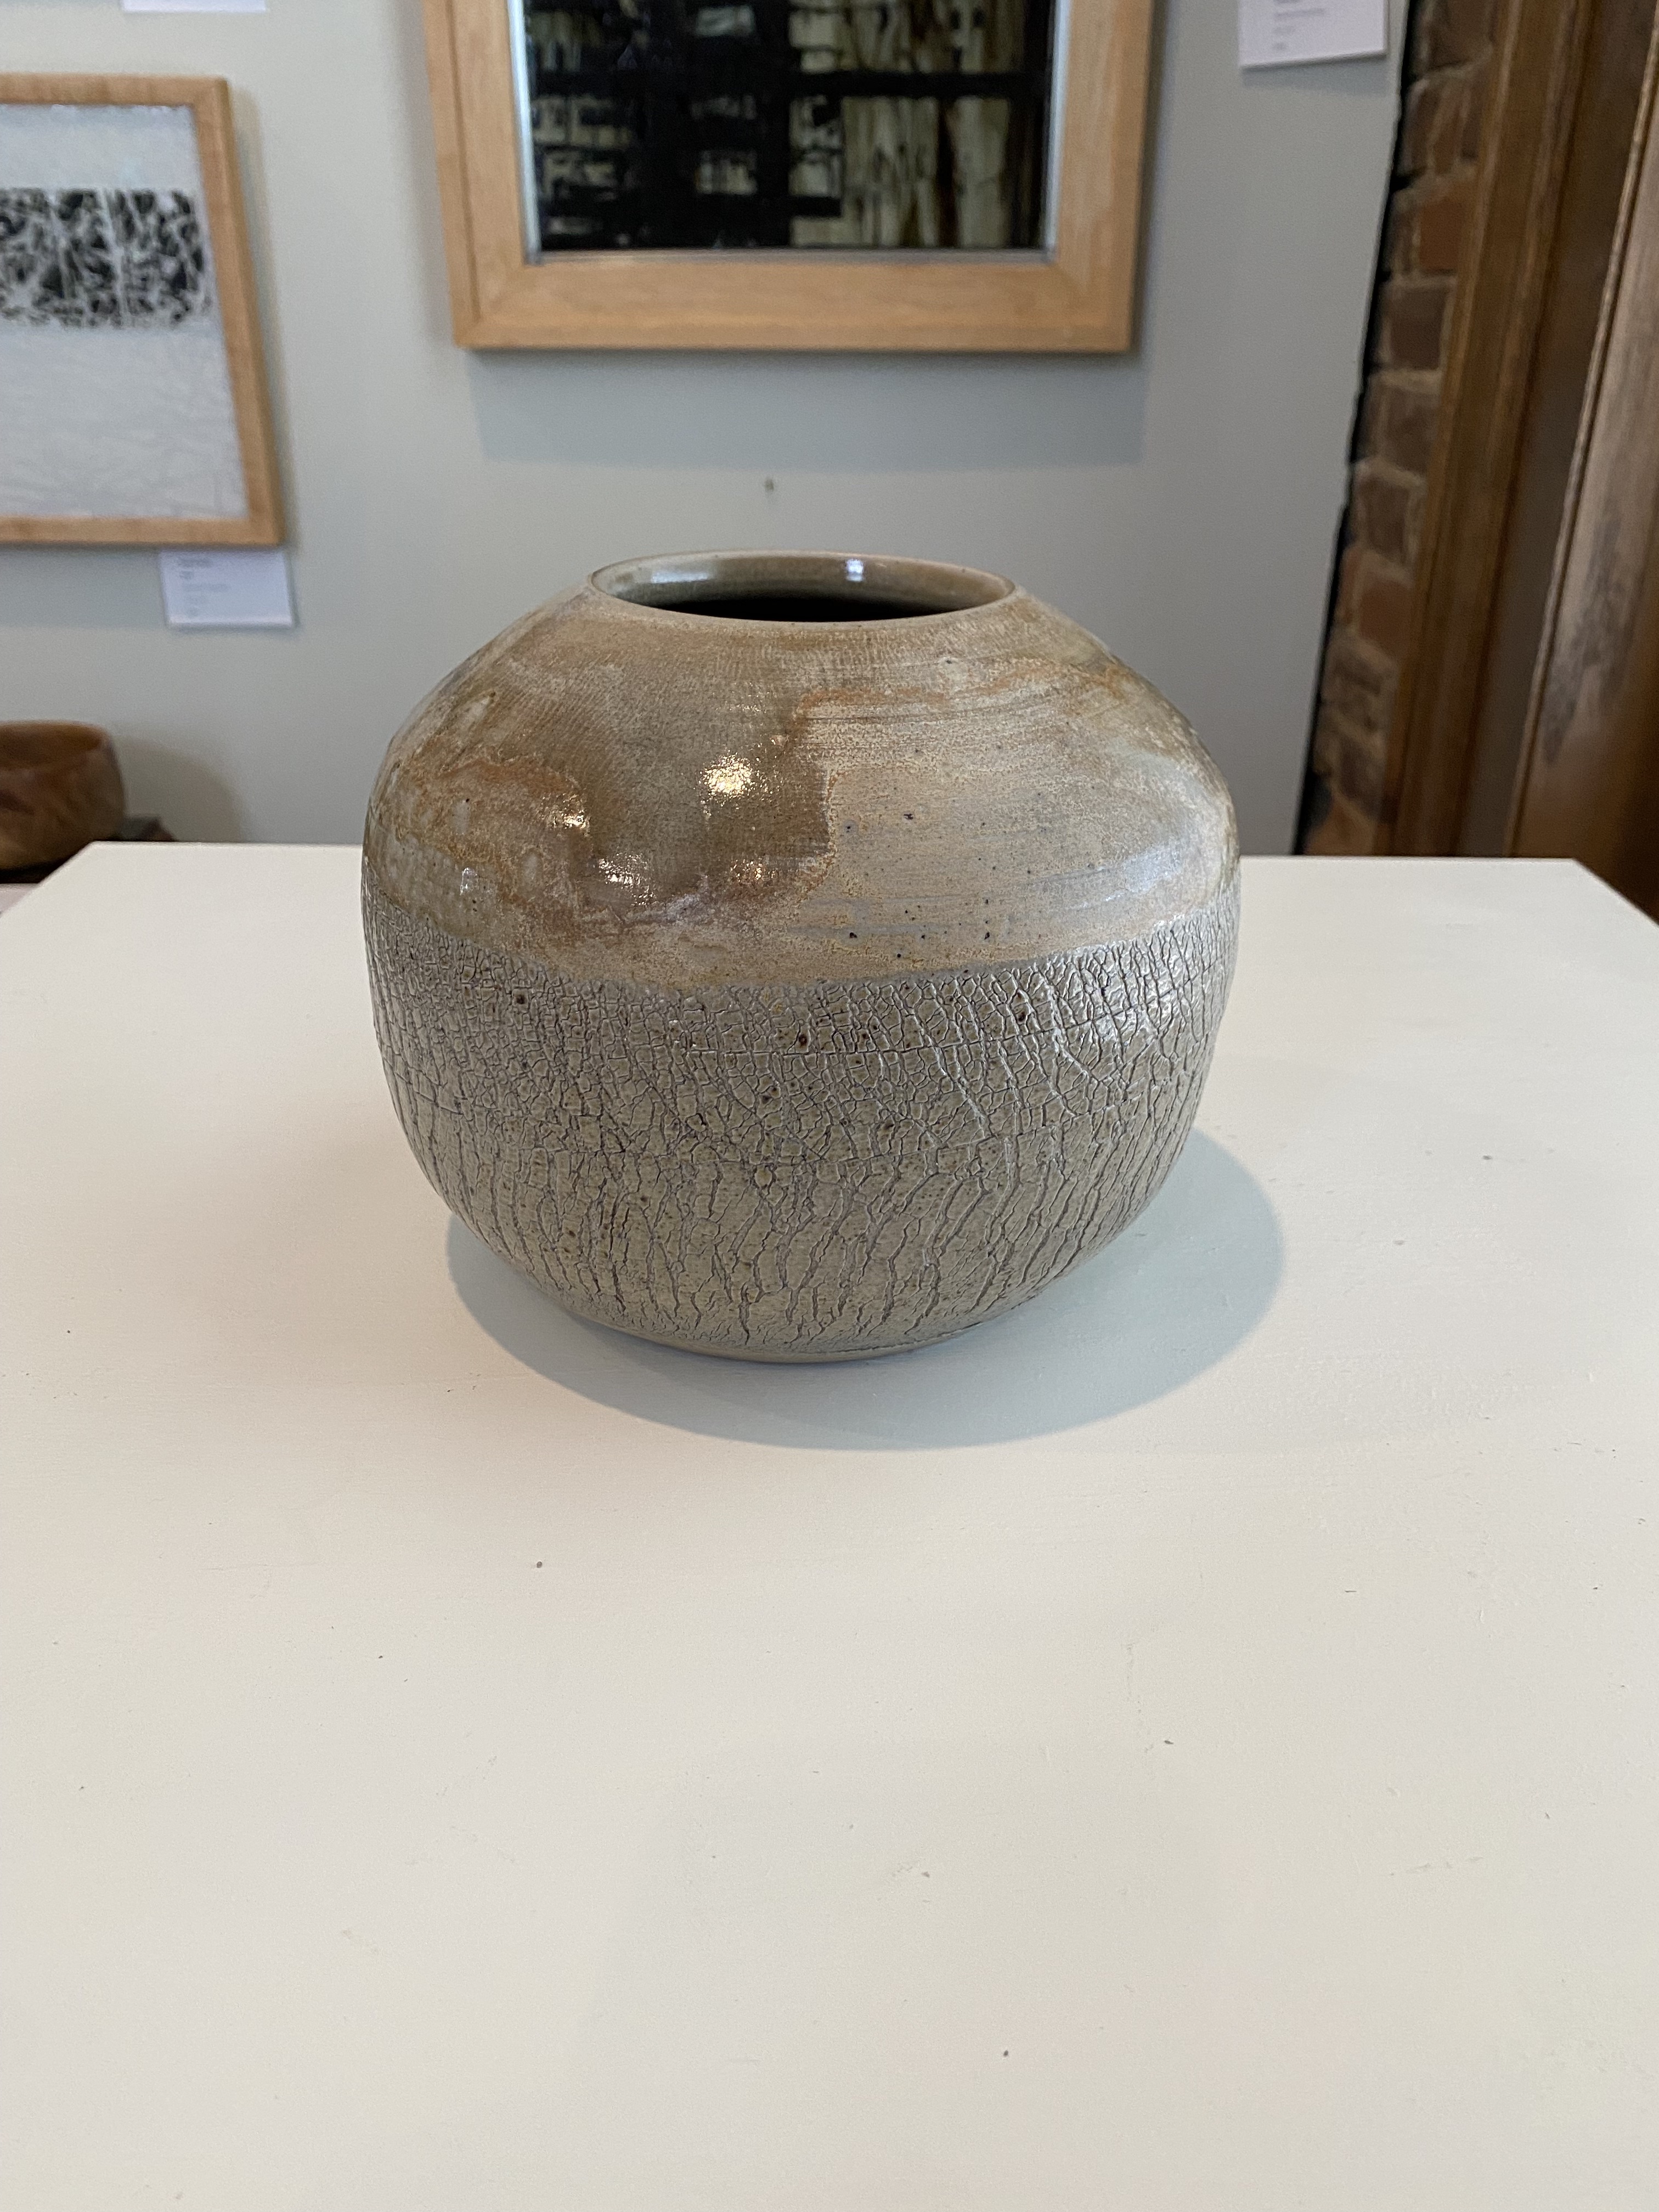 Vase
Salt-Fired Ceramic
6"
$150.
SOLD